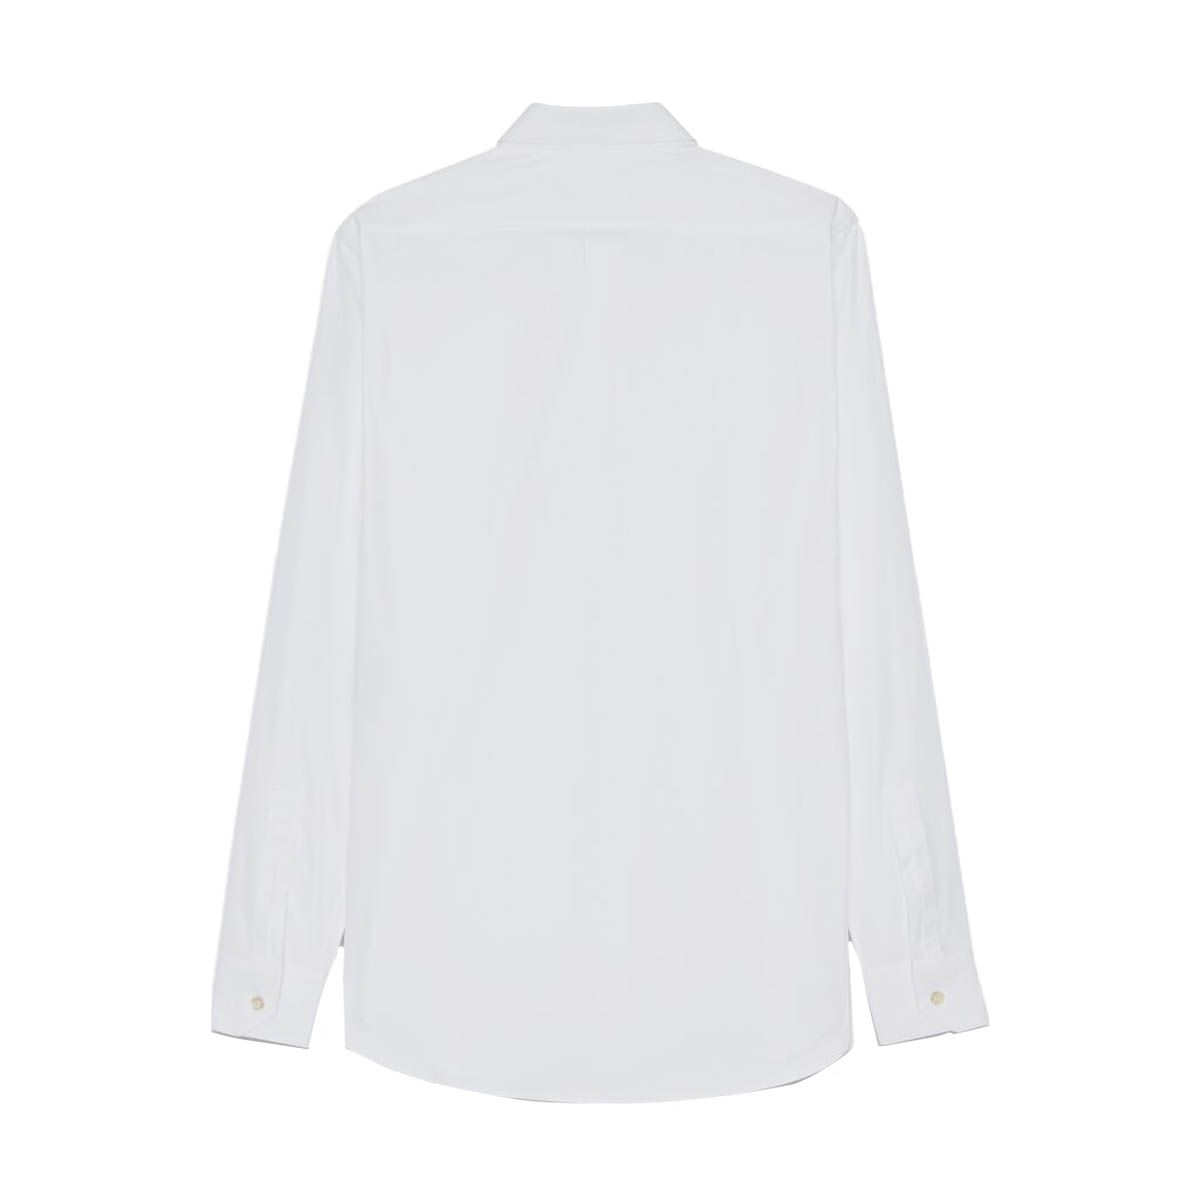 Shirt In Cotton Poplin/ White